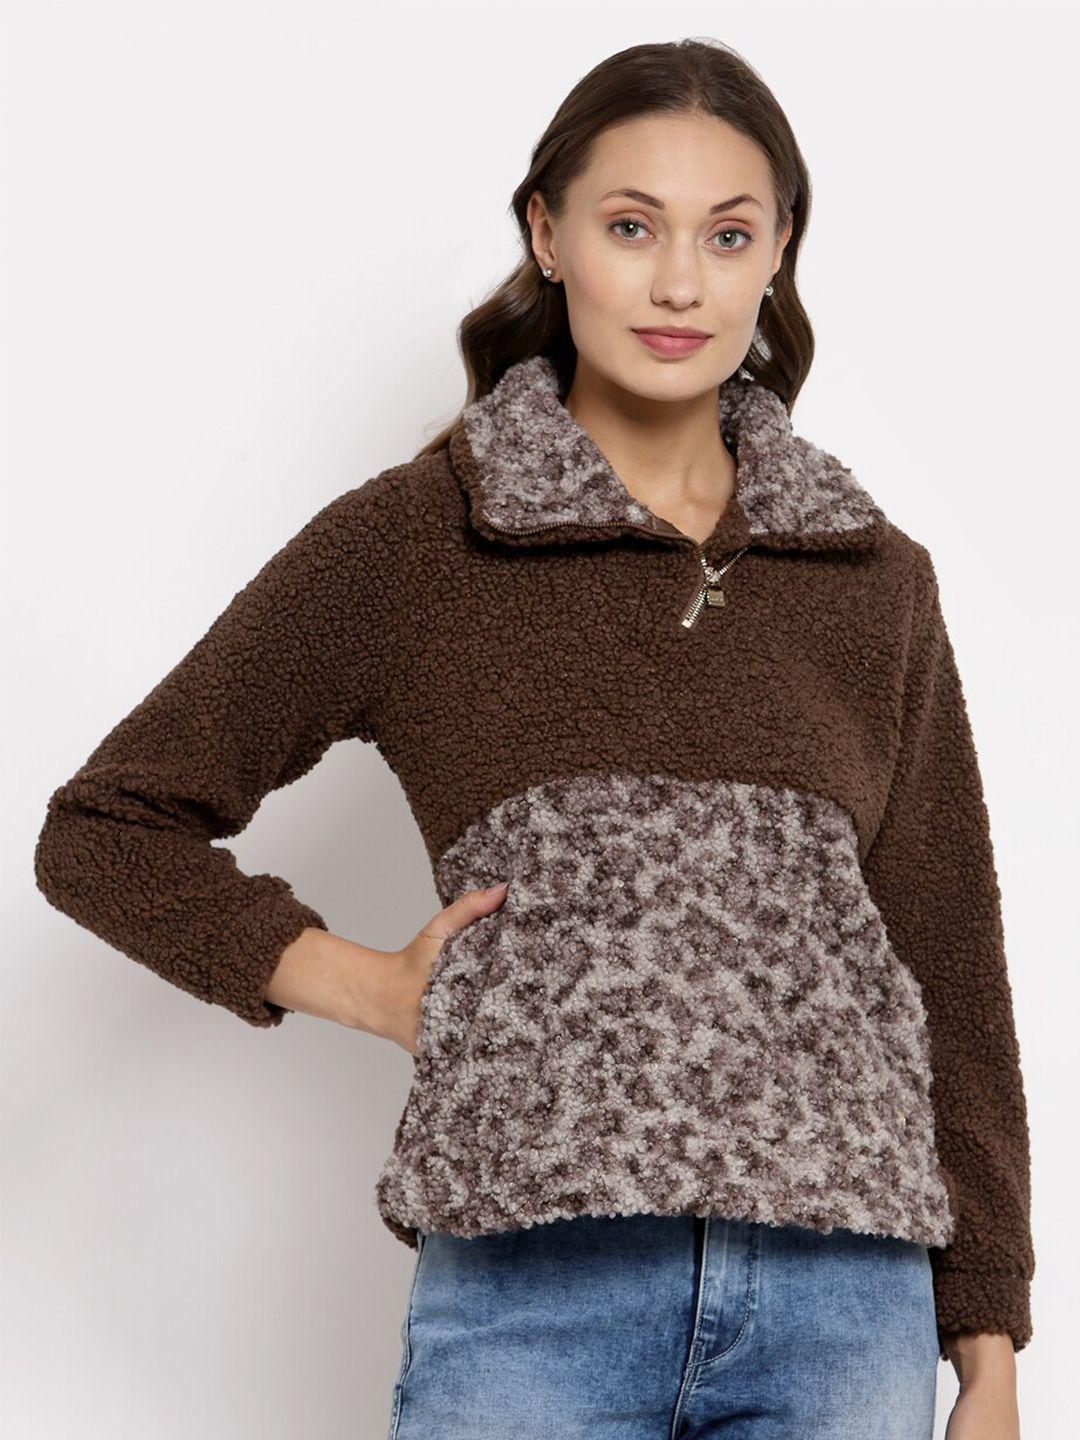 juelle women brown animal printed sweatshirt